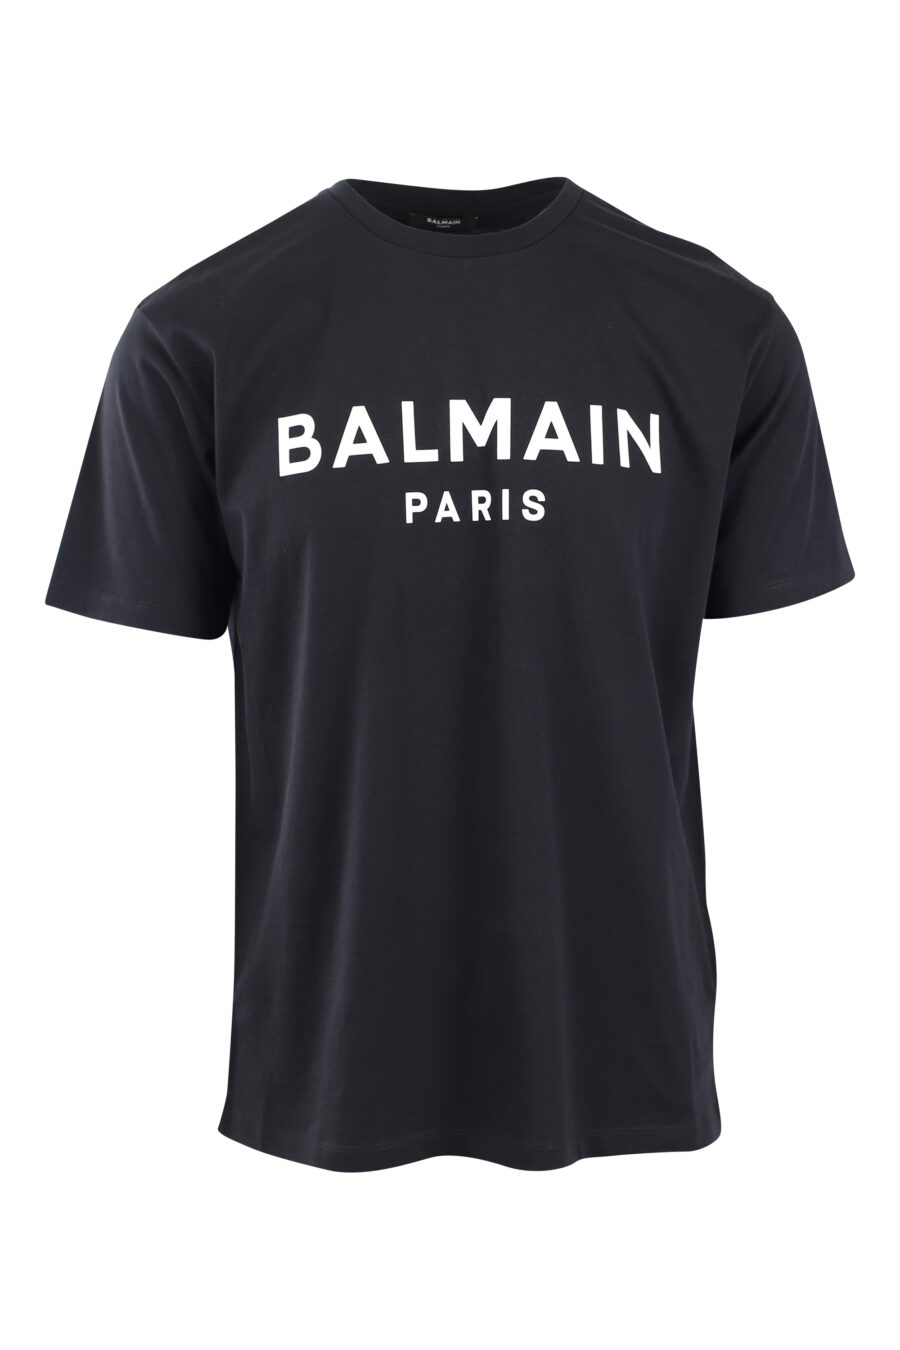 T-shirt preta com maxilogo "paris" branco - IMG 2579